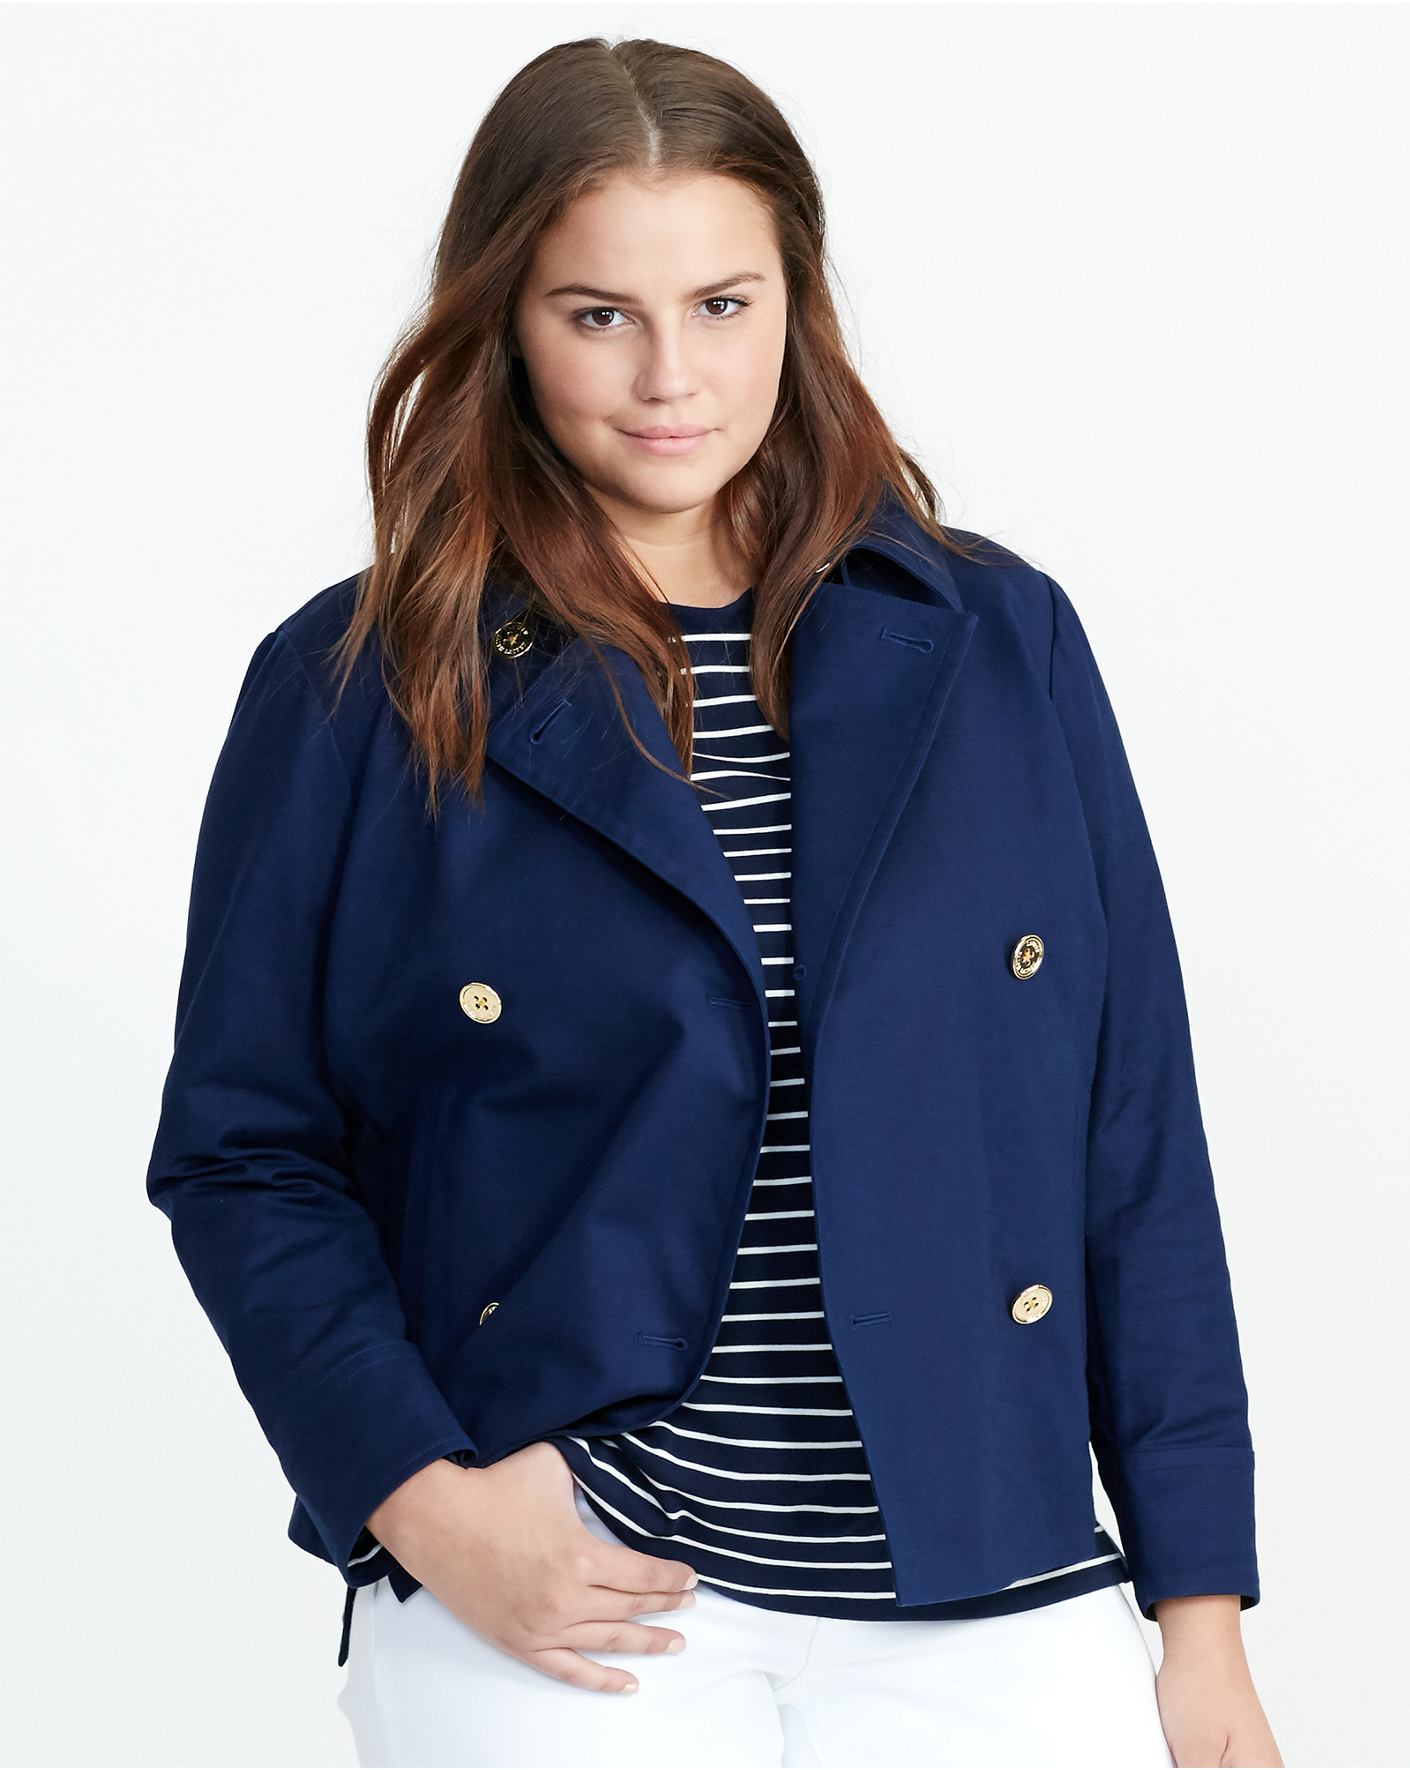 Women's Jackets and Blazers | Lauren | Ralph Lauren